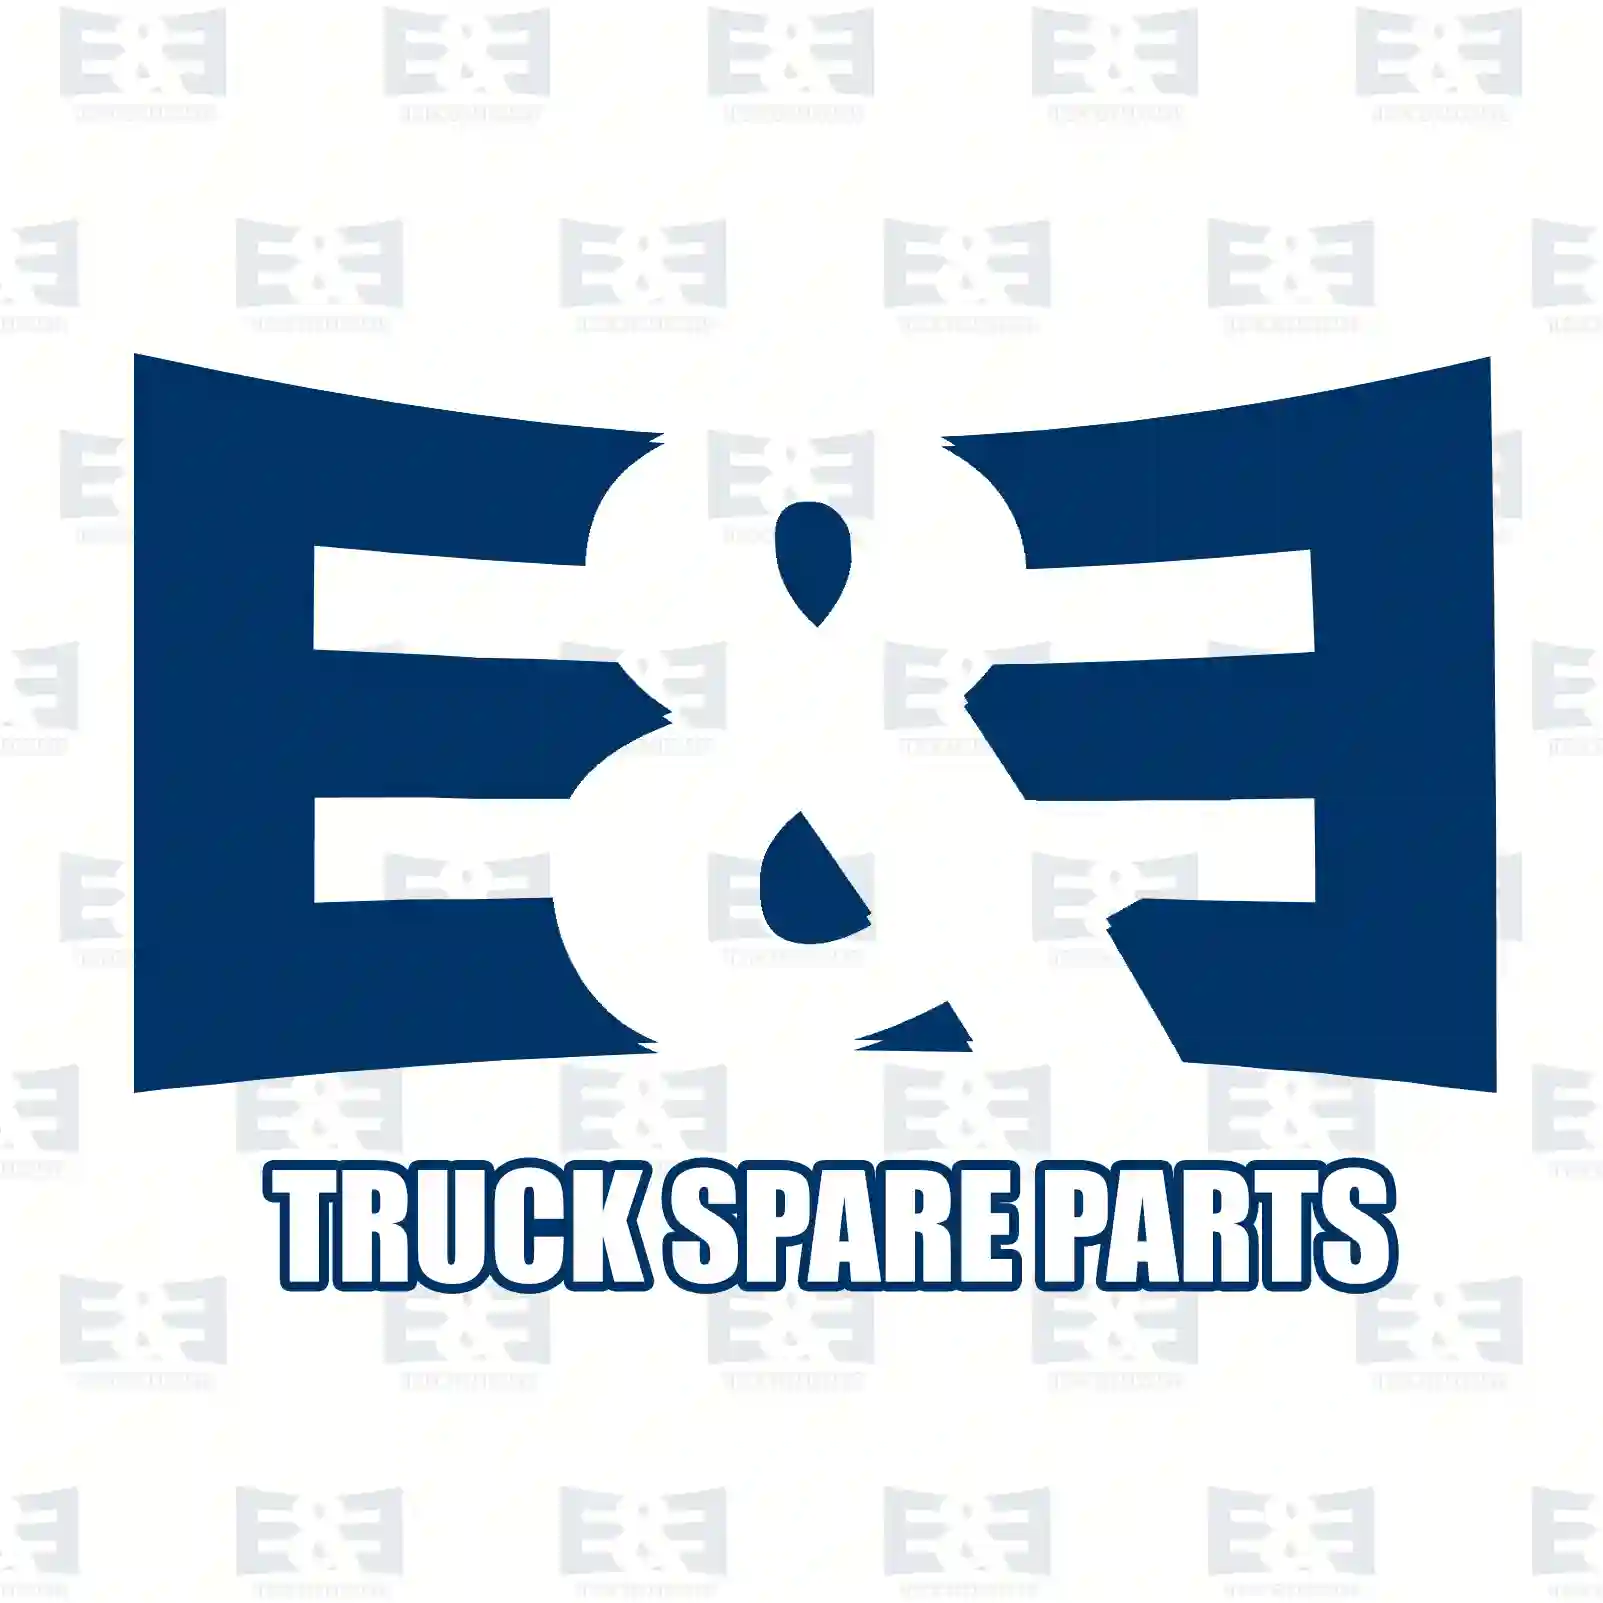 O-ring, 2E2285686, 1339672, 804725, 811054, ZG02842-0008 ||  2E2285686 E&E Truck Spare Parts | Truck Spare Parts, Auotomotive Spare Parts O-ring, 2E2285686, 1339672, 804725, 811054, ZG02842-0008 ||  2E2285686 E&E Truck Spare Parts | Truck Spare Parts, Auotomotive Spare Parts